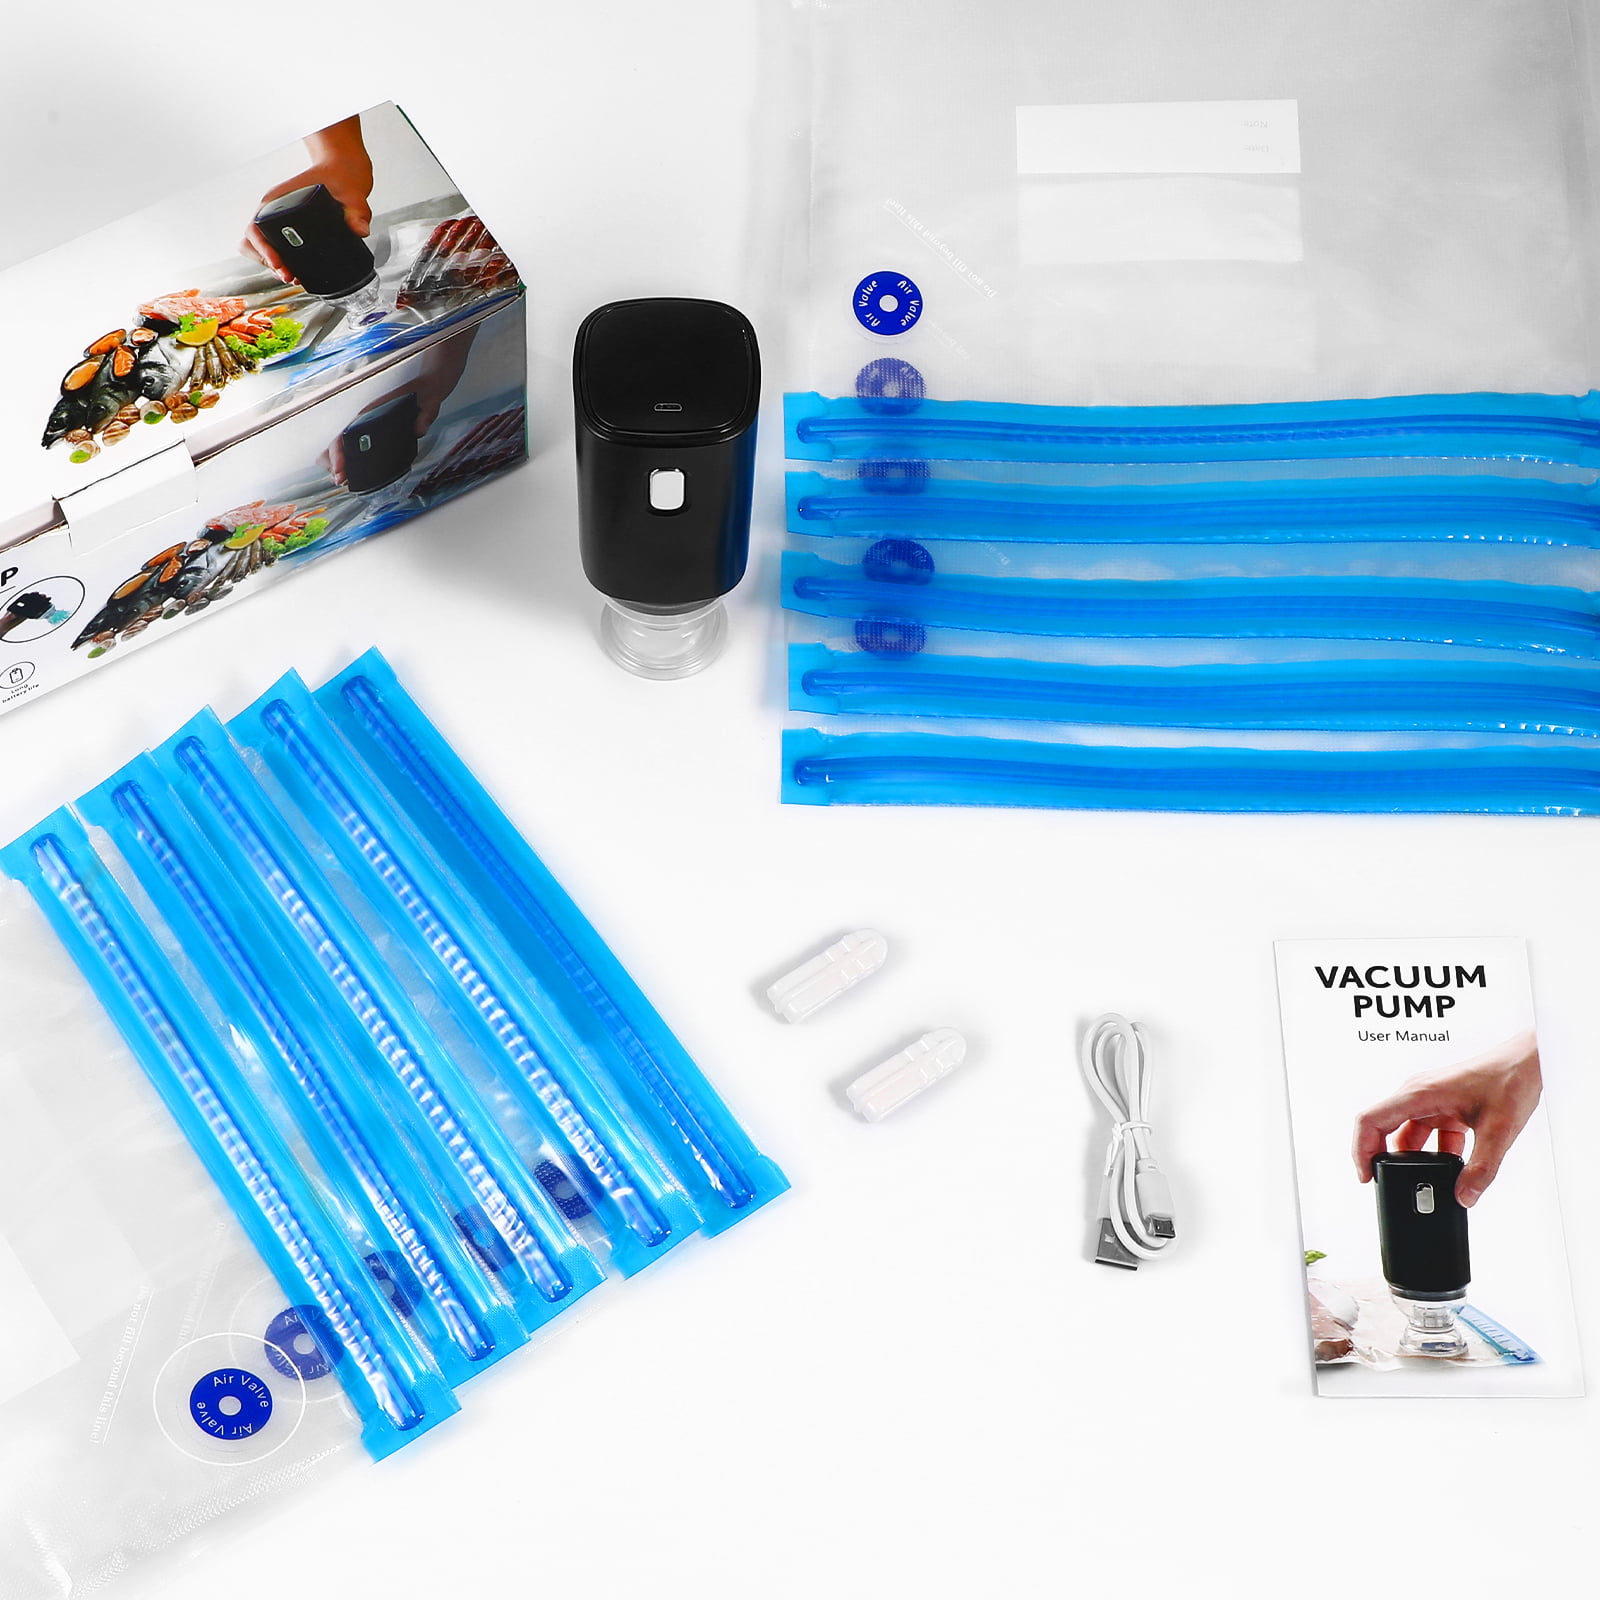 SousBear Sous Vide Bags, Electric Vacuum Sealer Food Pump & Reusable Vacuum Food Storage Bags Kit